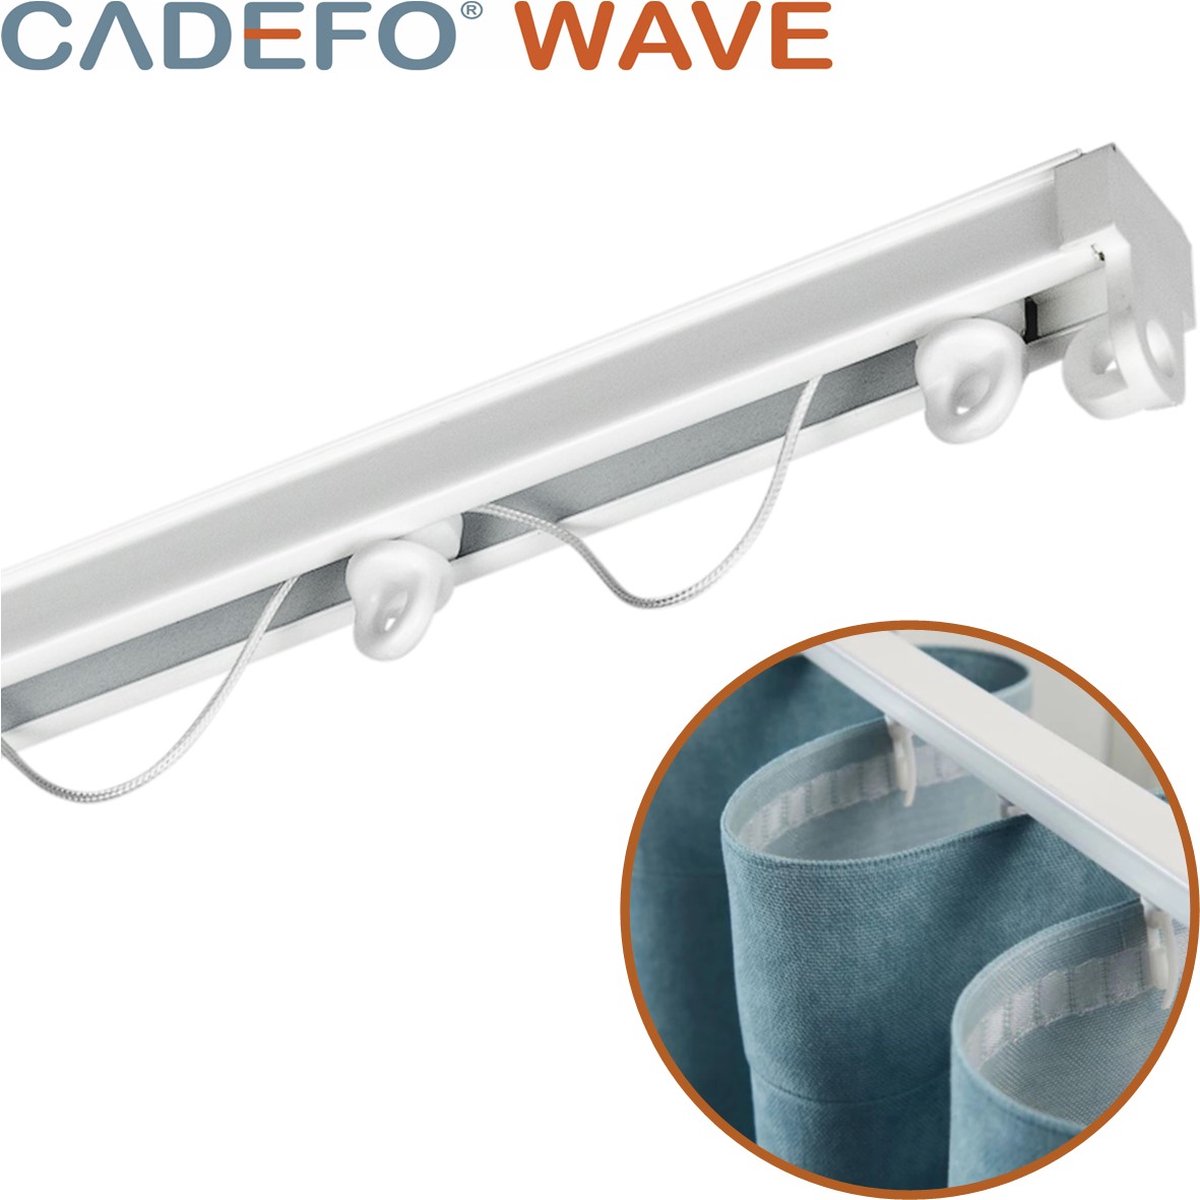 CADEFO WAVE (551 - 600 cm) Gordijnrails - Compleet op maat! - UIT 1 STUK - Leverbaar tot 6 meter - Plafondbevestiging - Lengte 558 cm